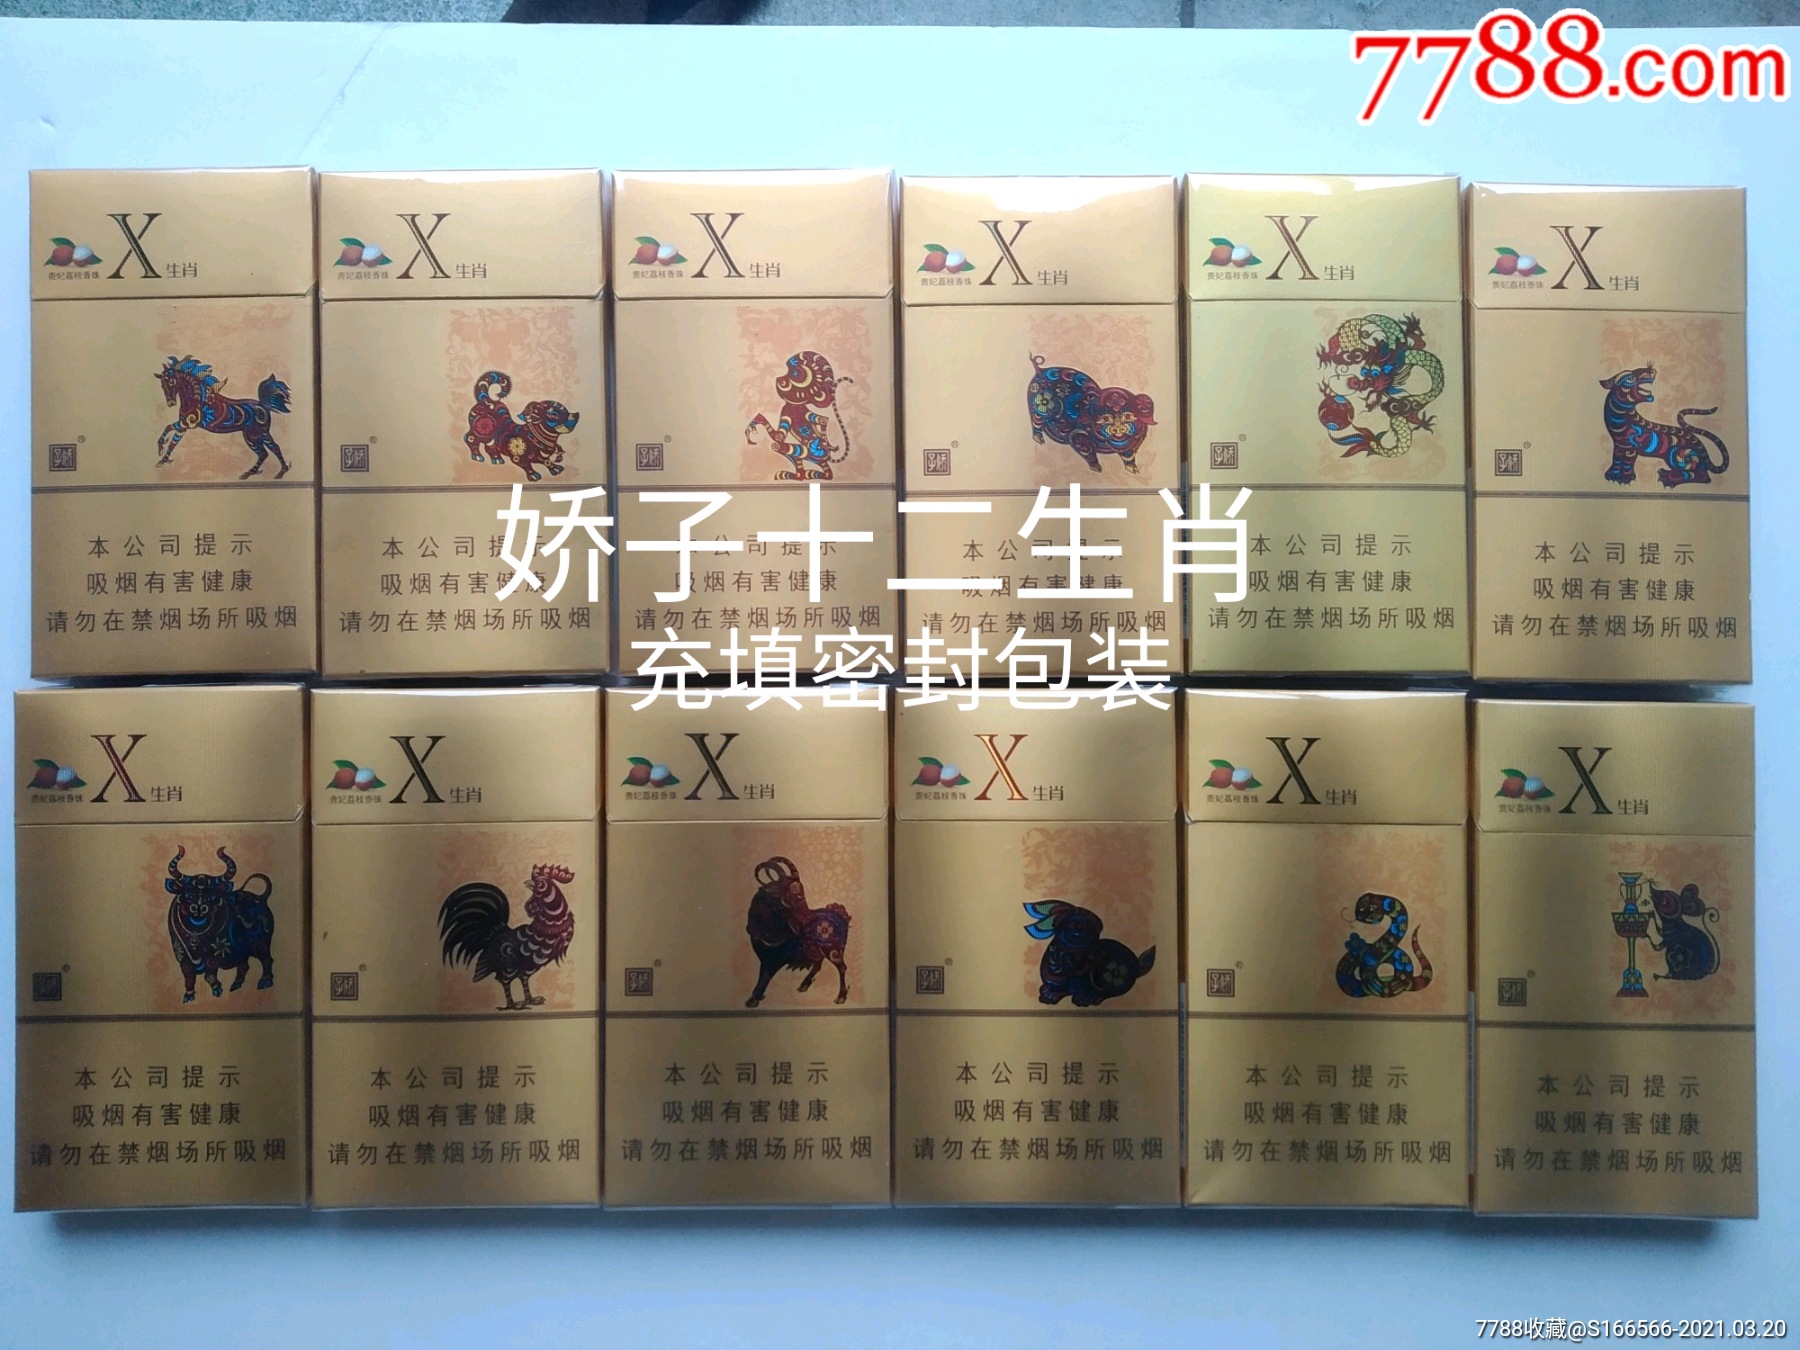 十二生肖木盒香烟图片